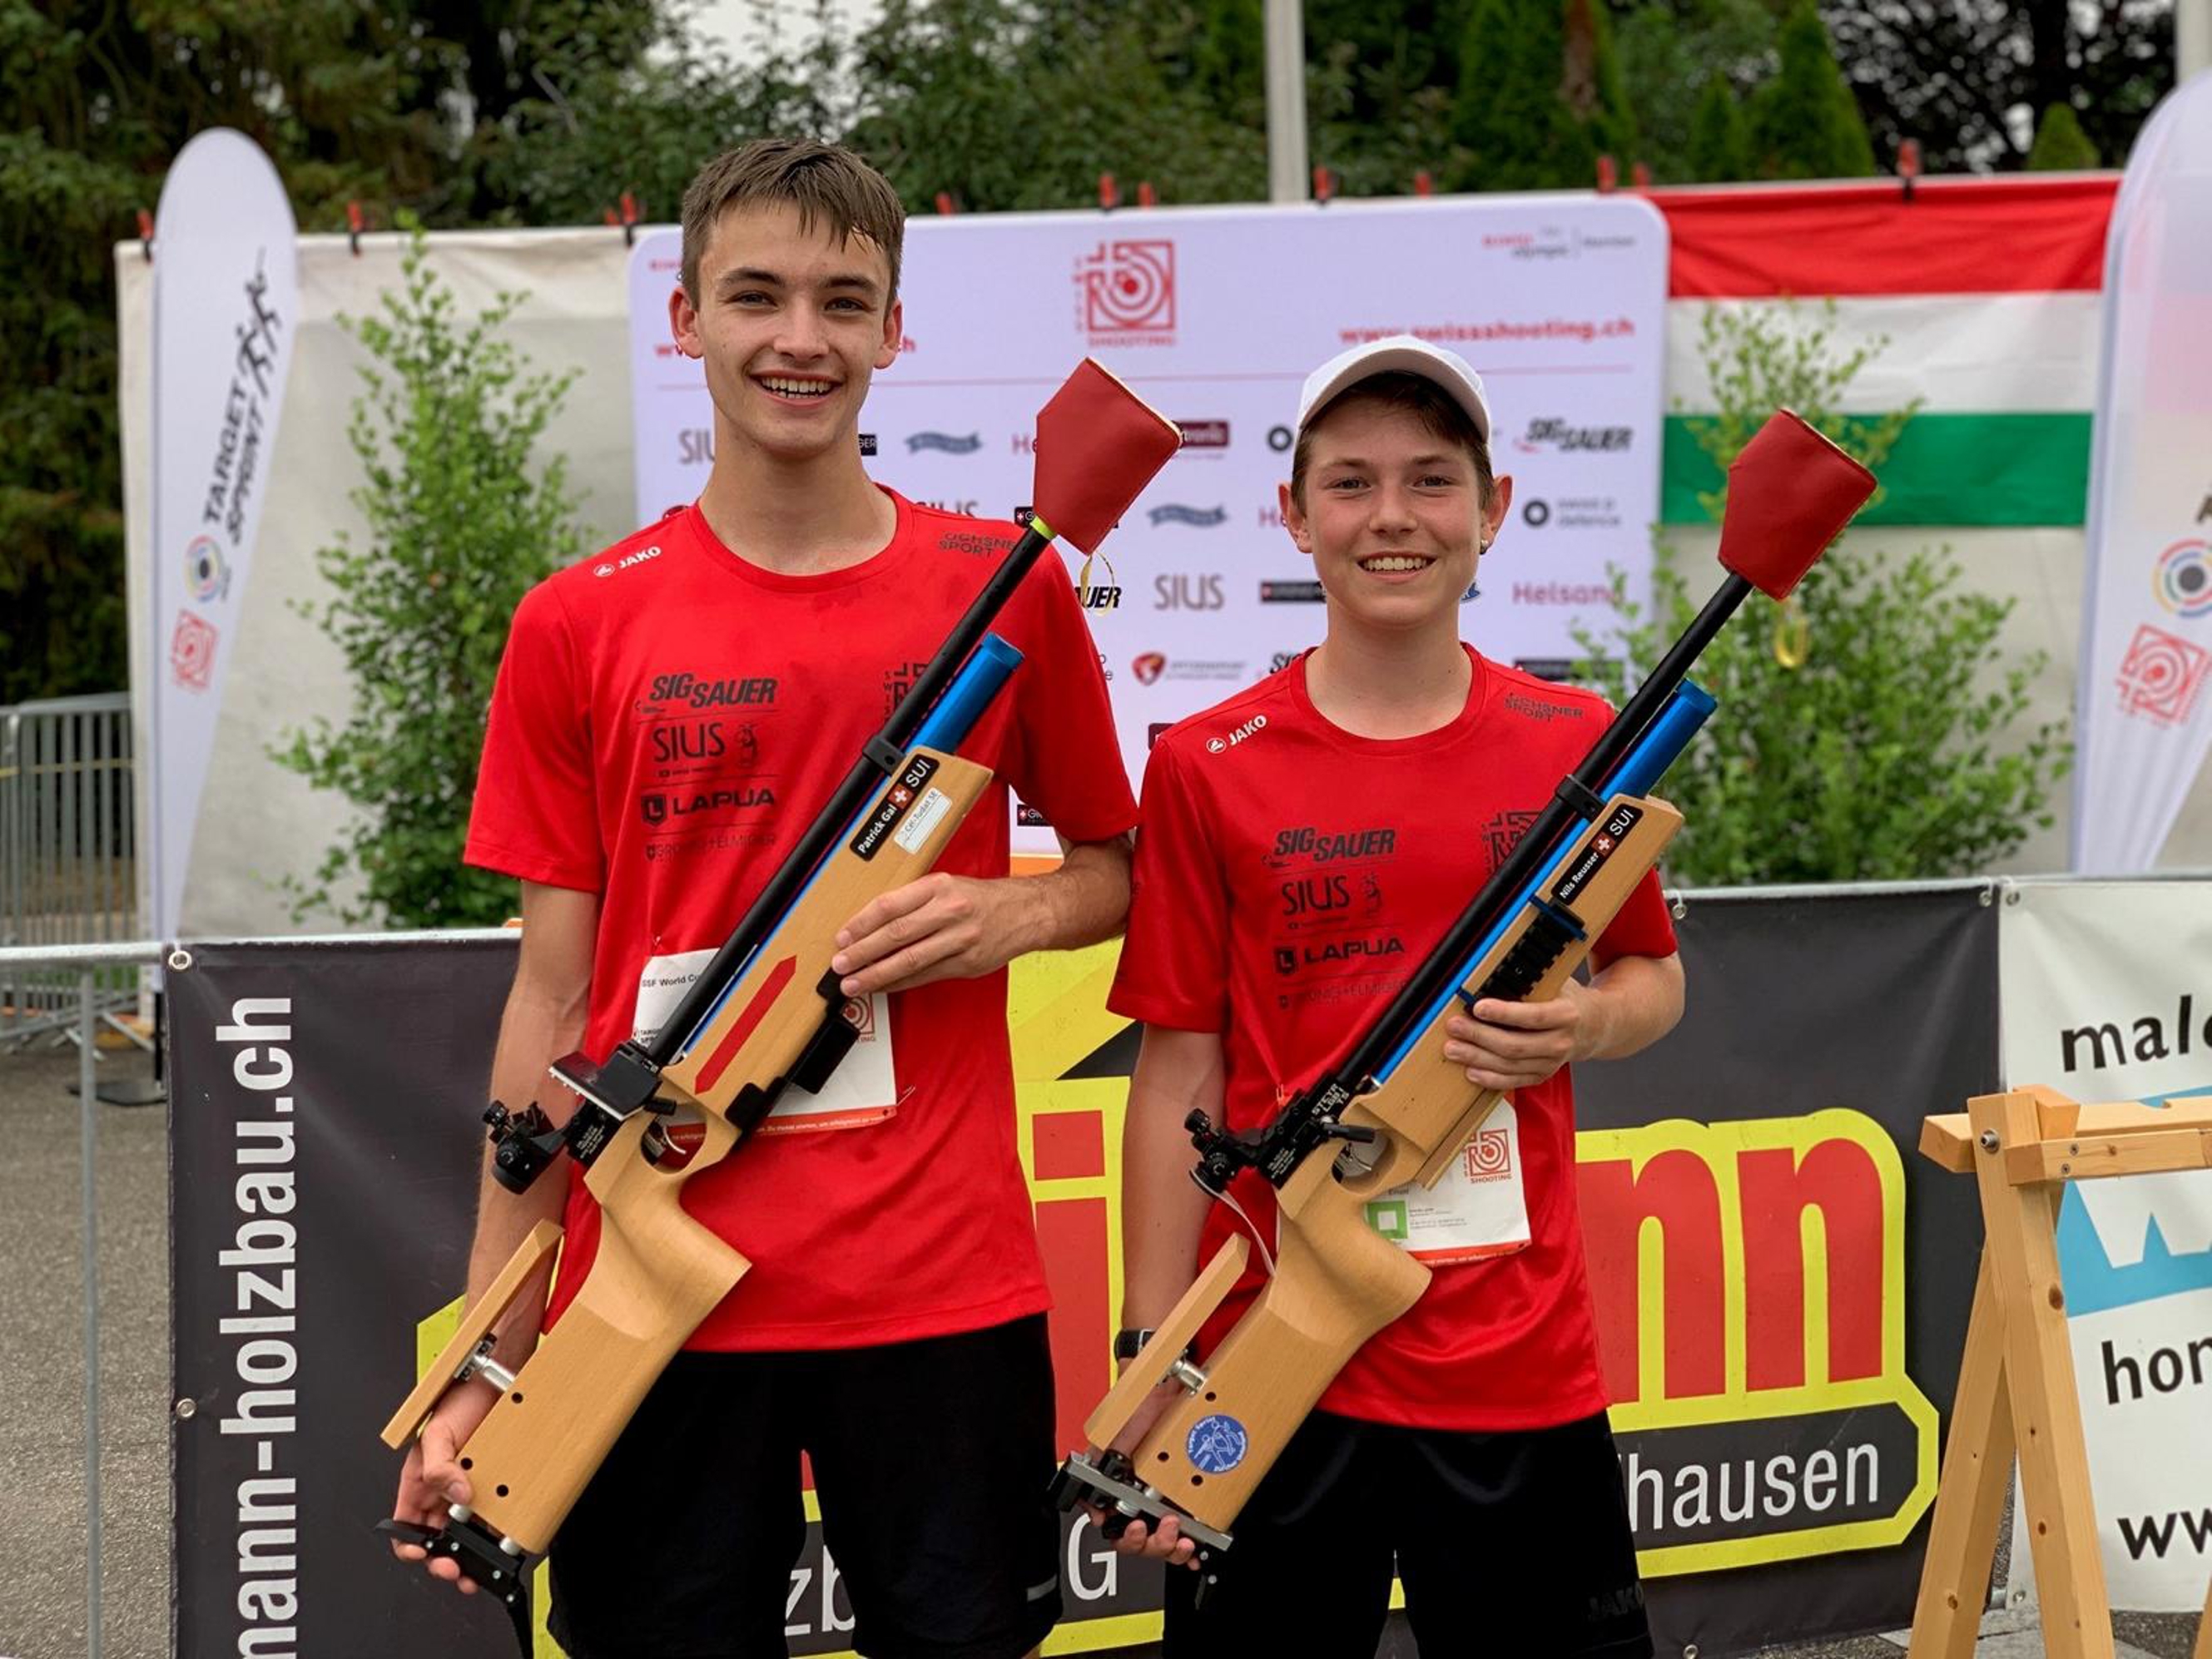 Patrick Gal und Nils Reusser nach dem Wettkampf im zürcherischen Hombrechtikon. Foto: Michael Schenk